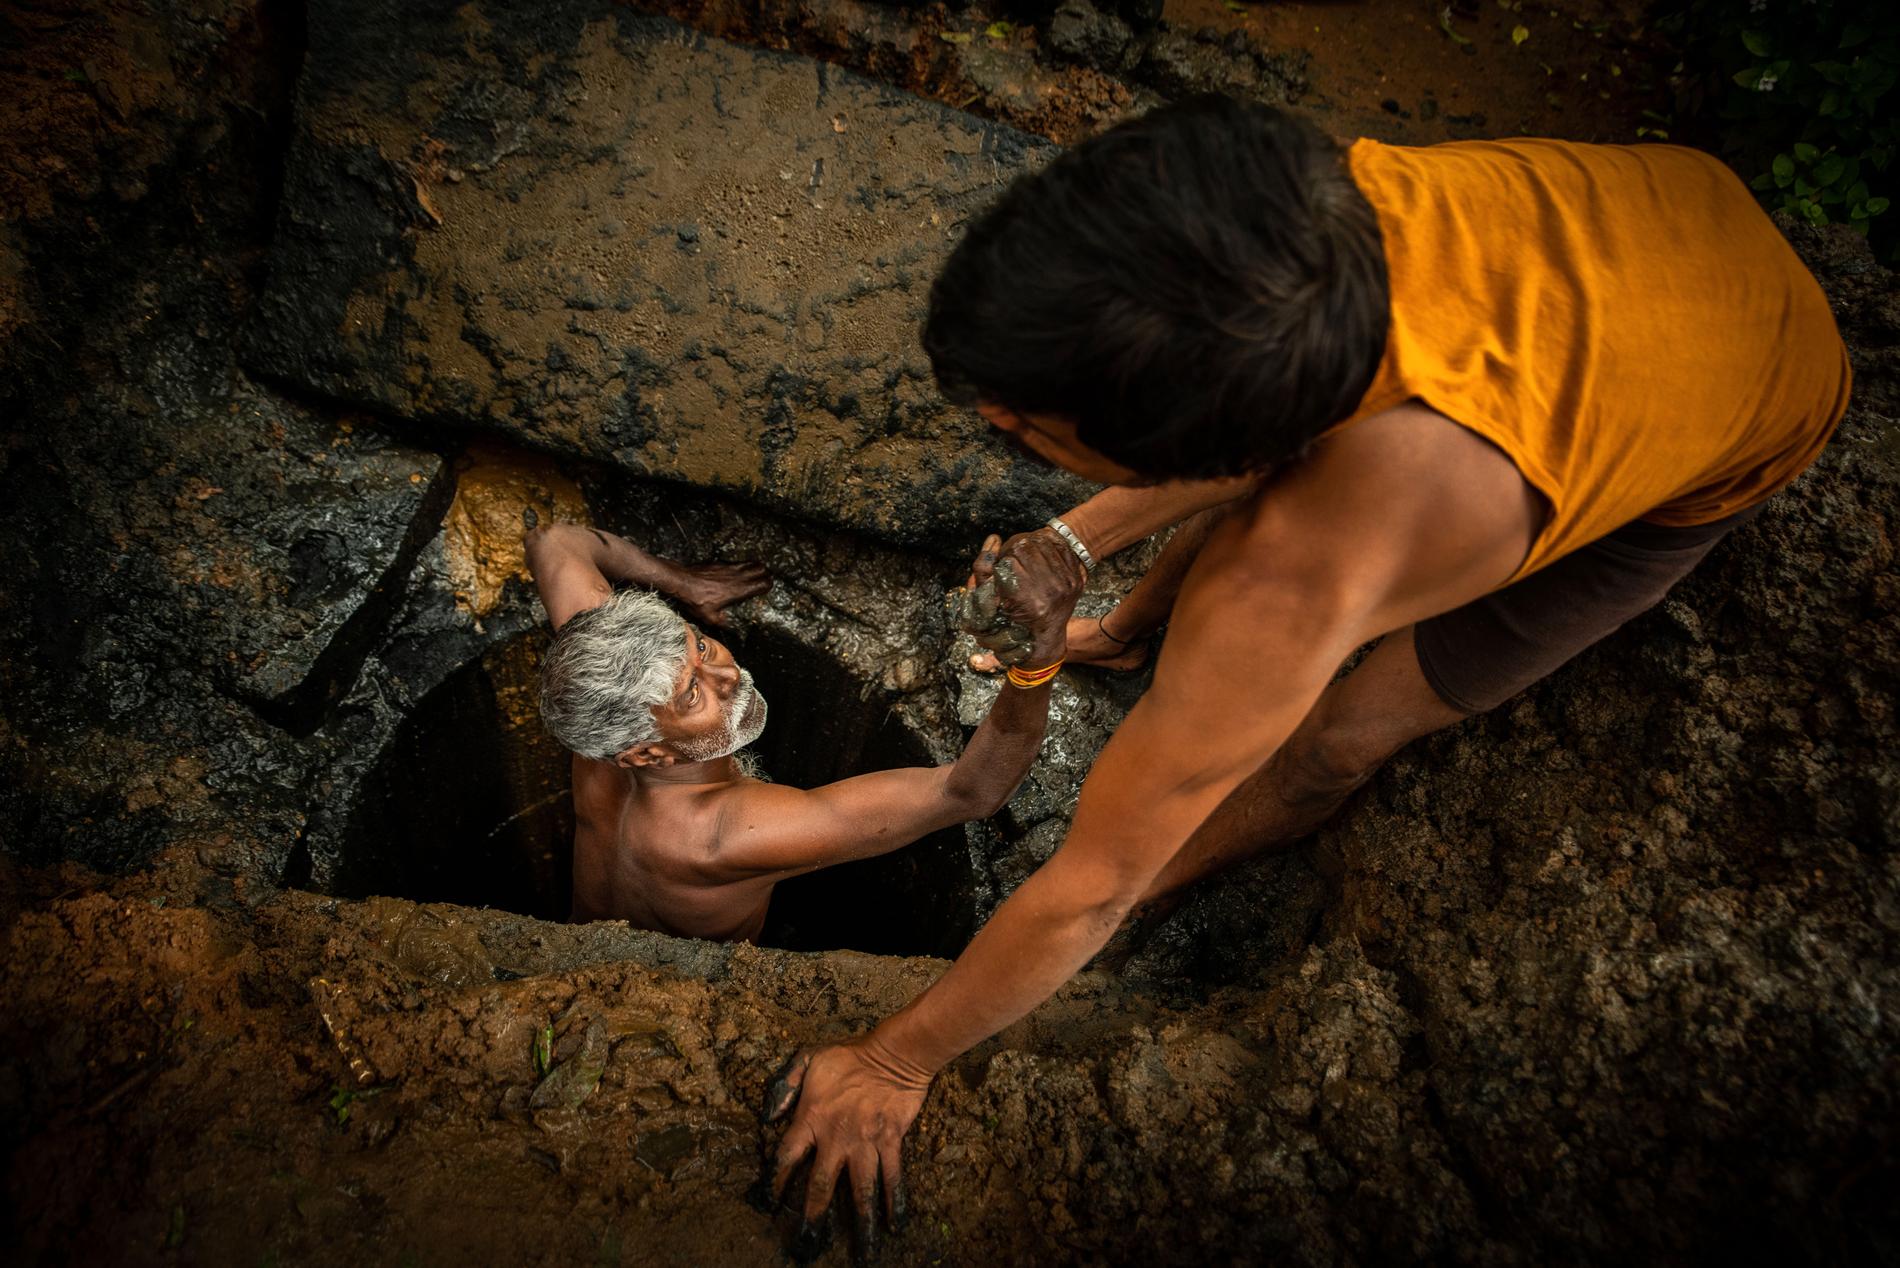 54-årige Kaverappa från Bangalore i Indien hjälps upp ur latrinhålet han håller på att tömma av en kollega. Kaverappa har arbetat som latrintömmare i 35 år.